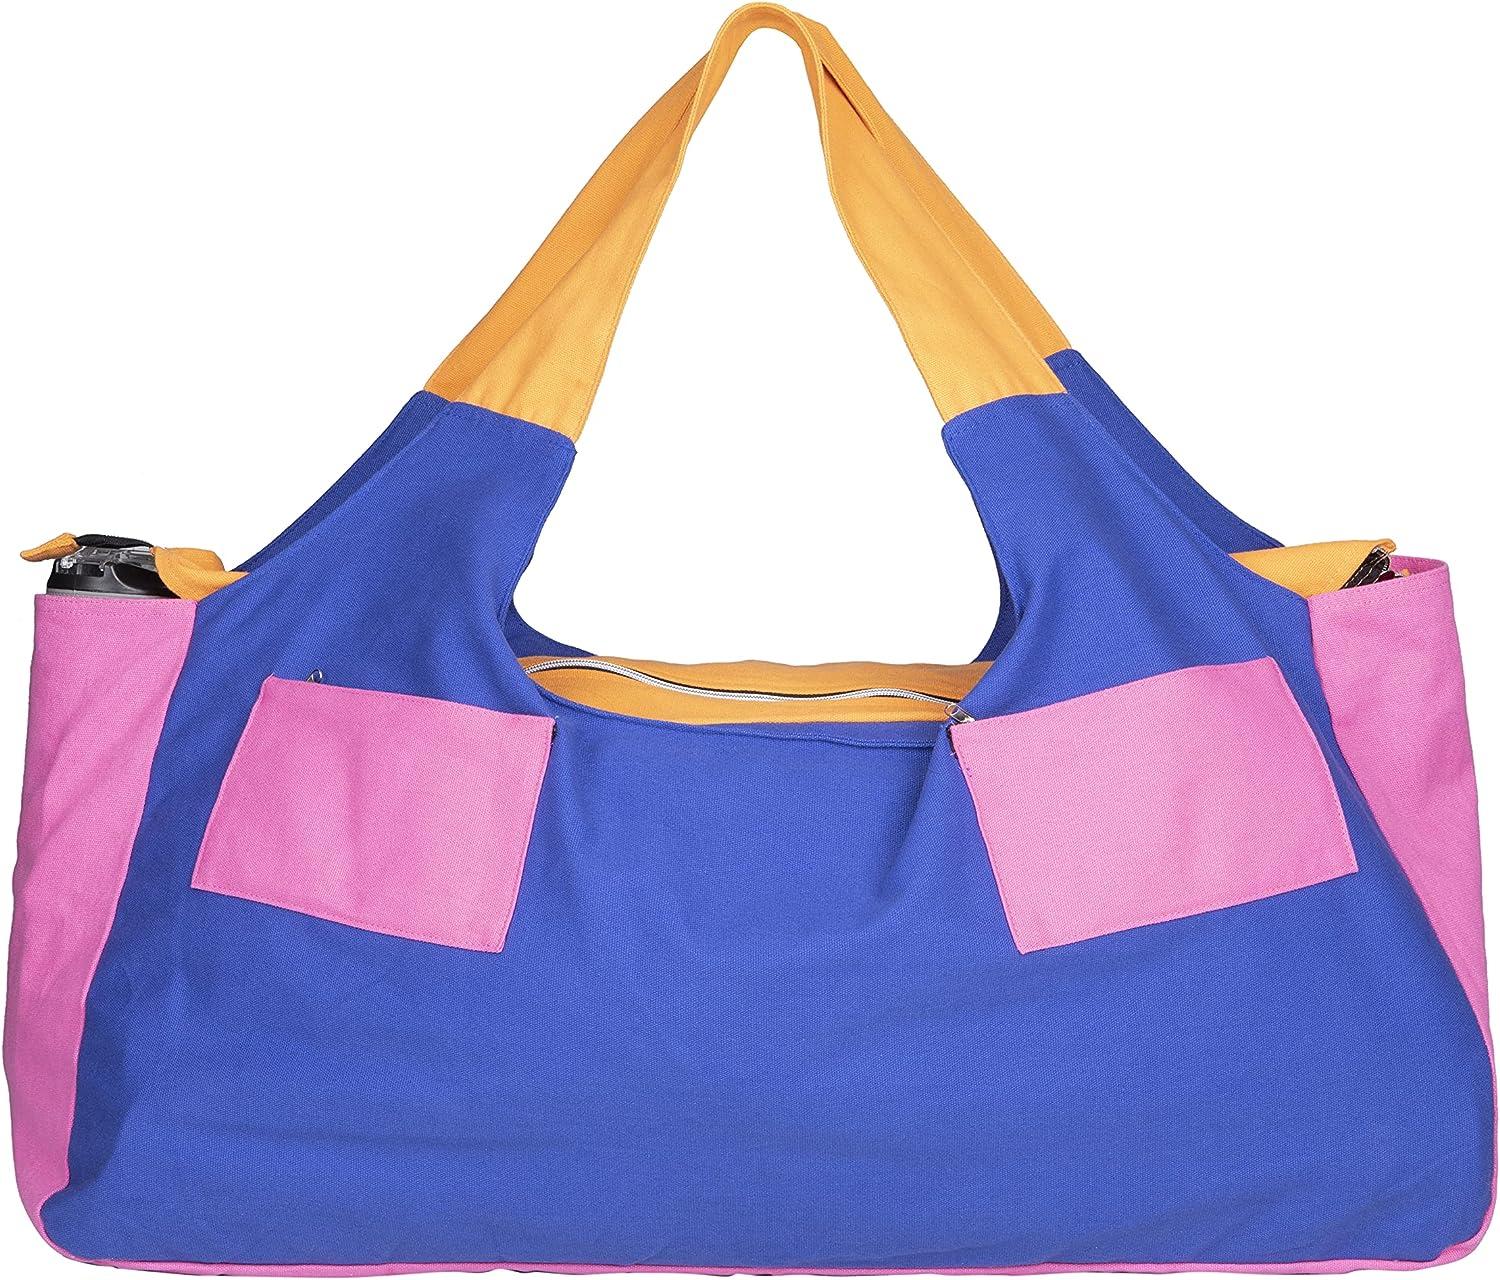  RAVEN MODE Yoga Mat Bag,Large Size Pocket,Bag for